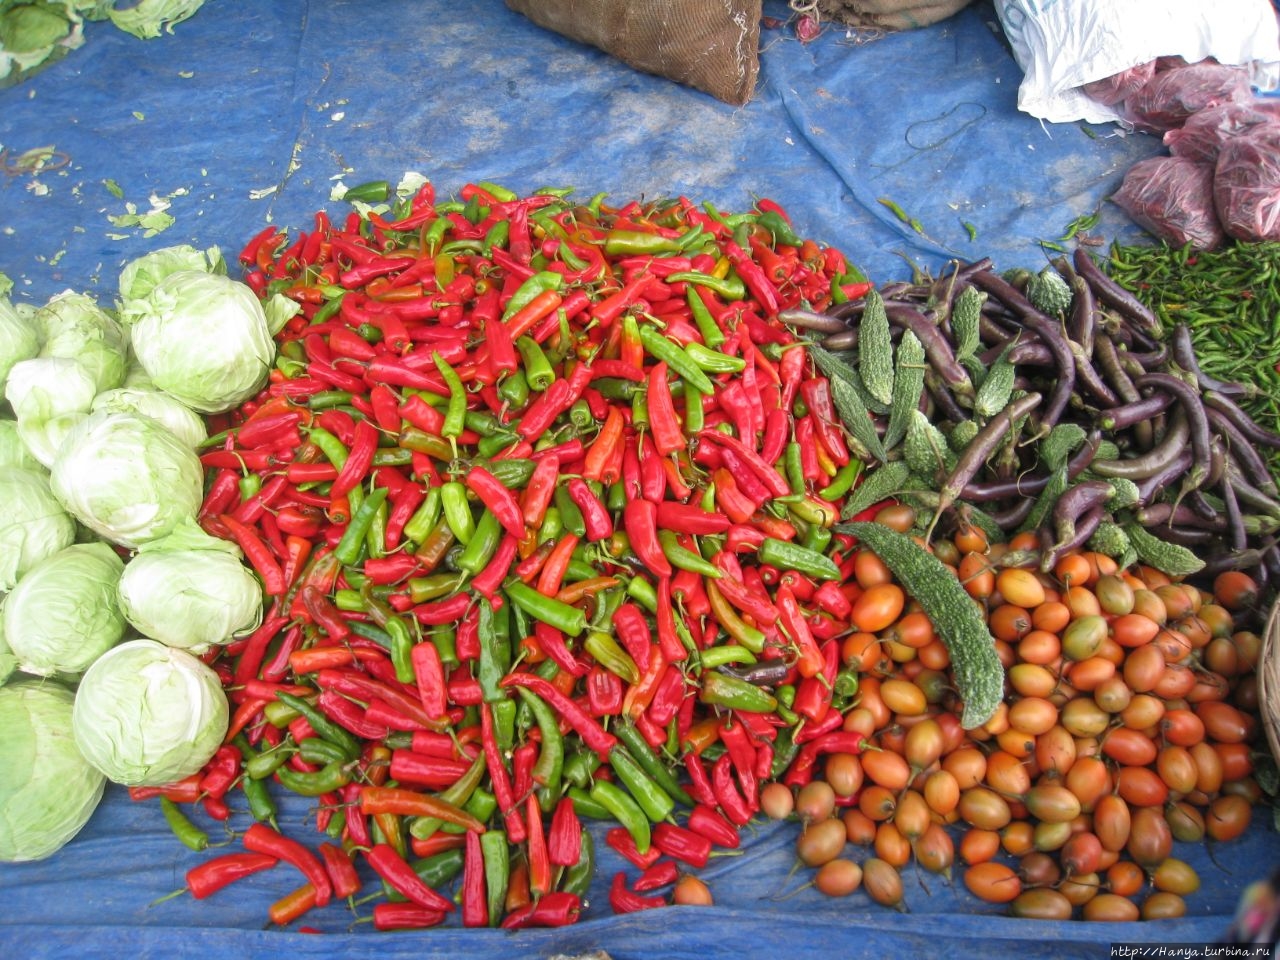 Восрексный рынок в Вангди Вангди-Пходранг, Бутан